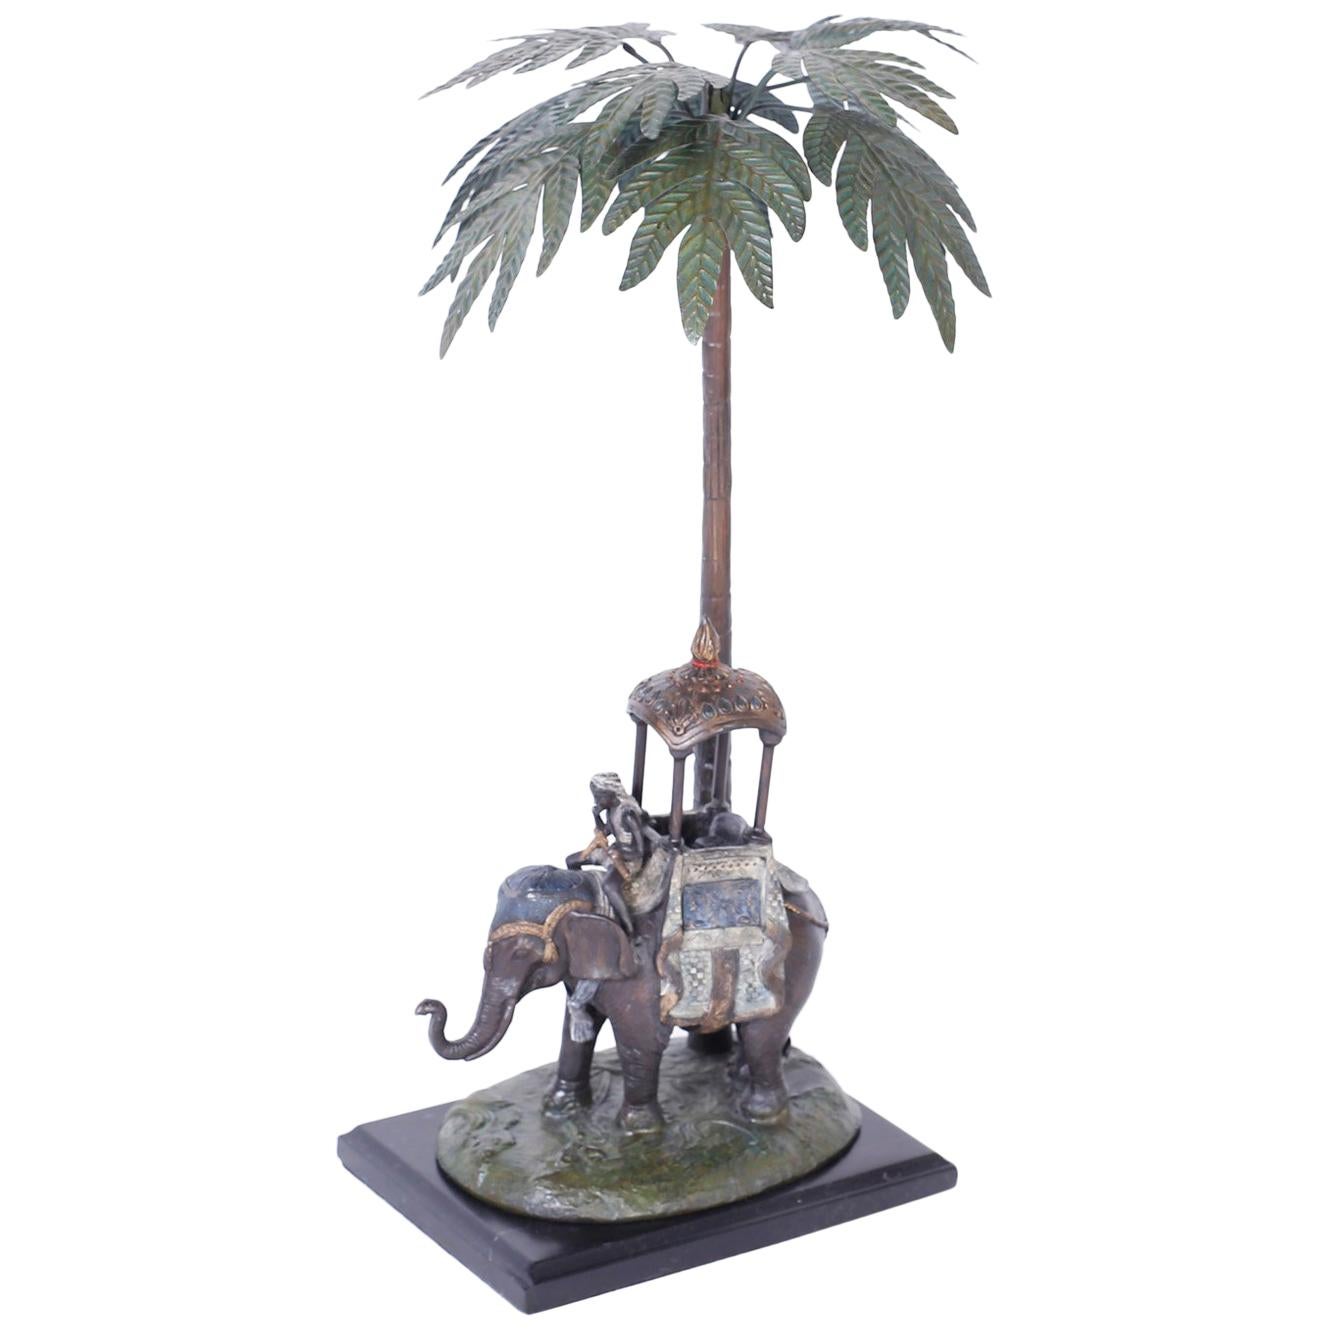 Kalt bemalte Metallfigur eines Elefanten unter einem Palmenbaum